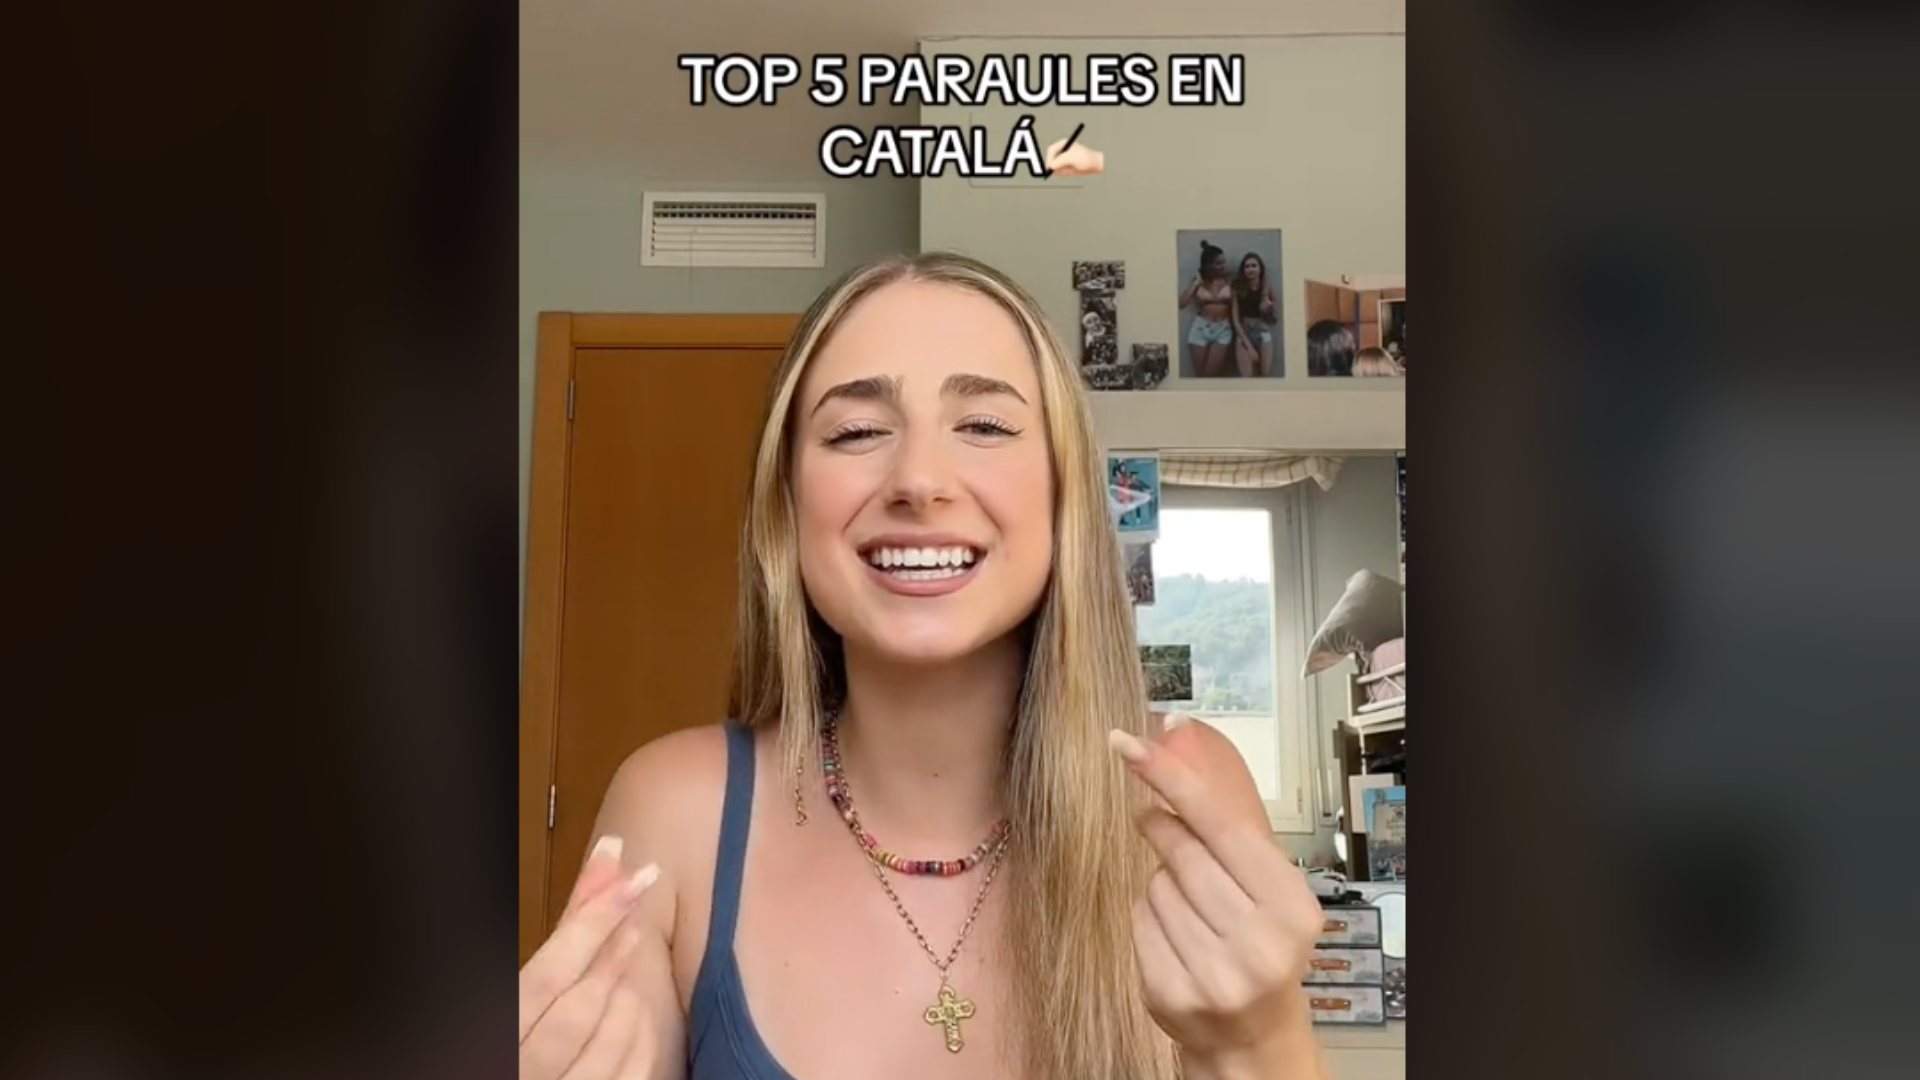 Les 5 paraules en català preferides d'aquesta tiktoker s'han tornat virals, quines són les teves?